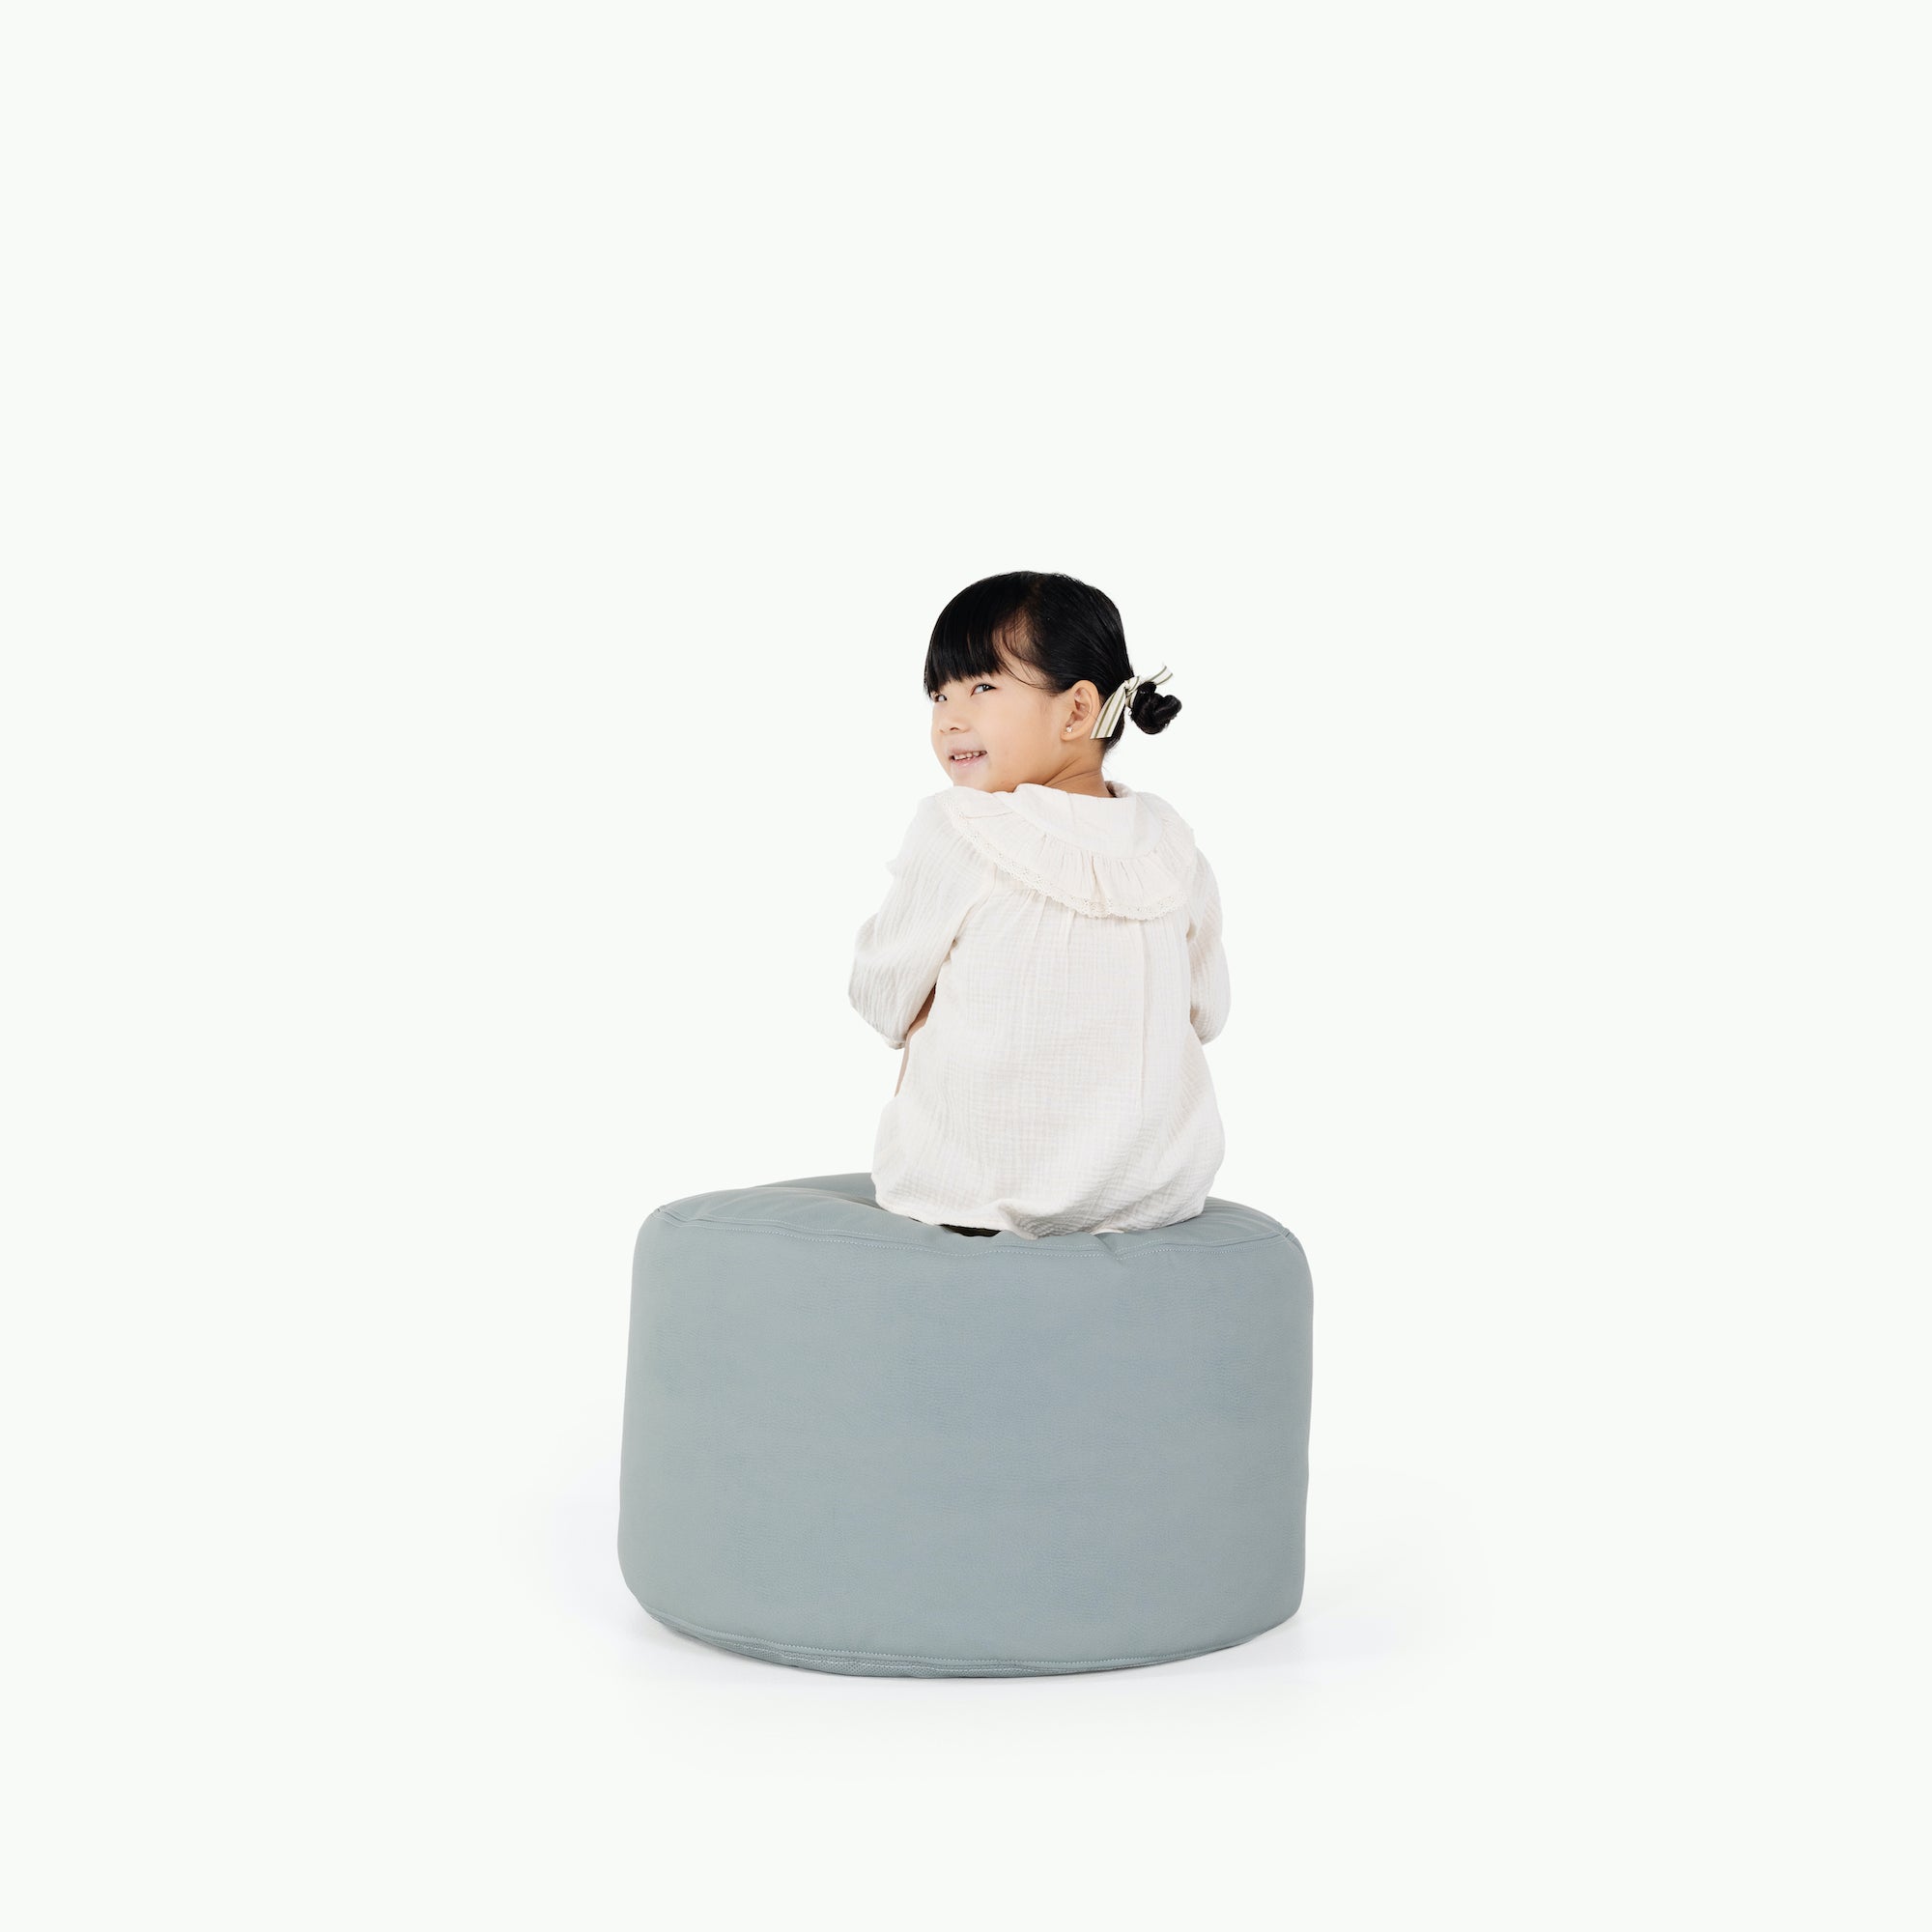 Amalfi / Circle@little girl sitting on pouf